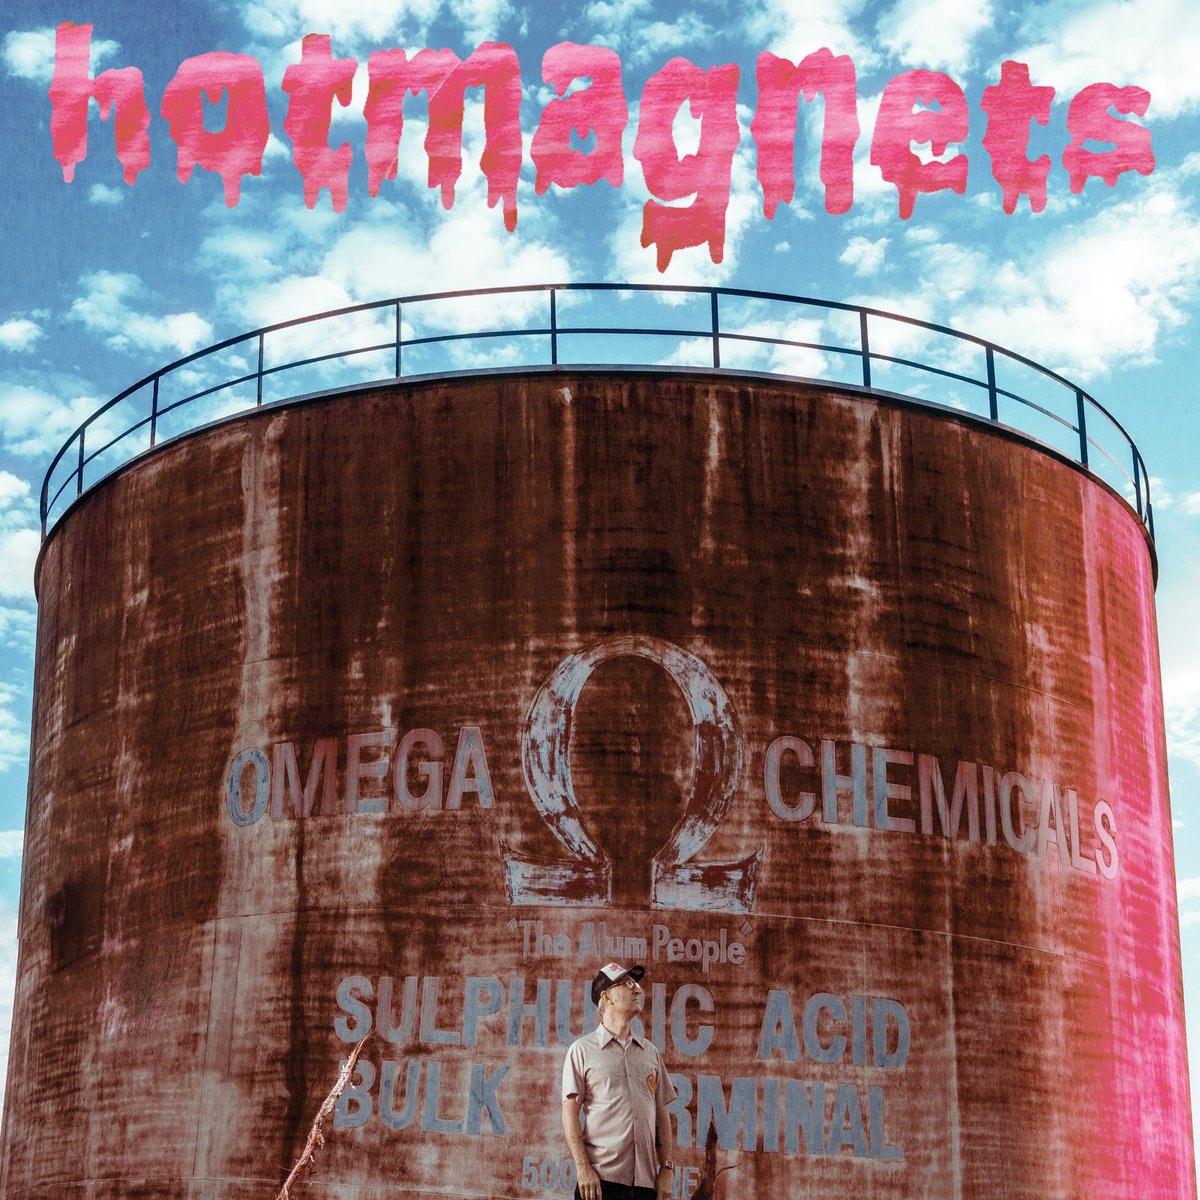 hotmagnets – Omega Chemicals